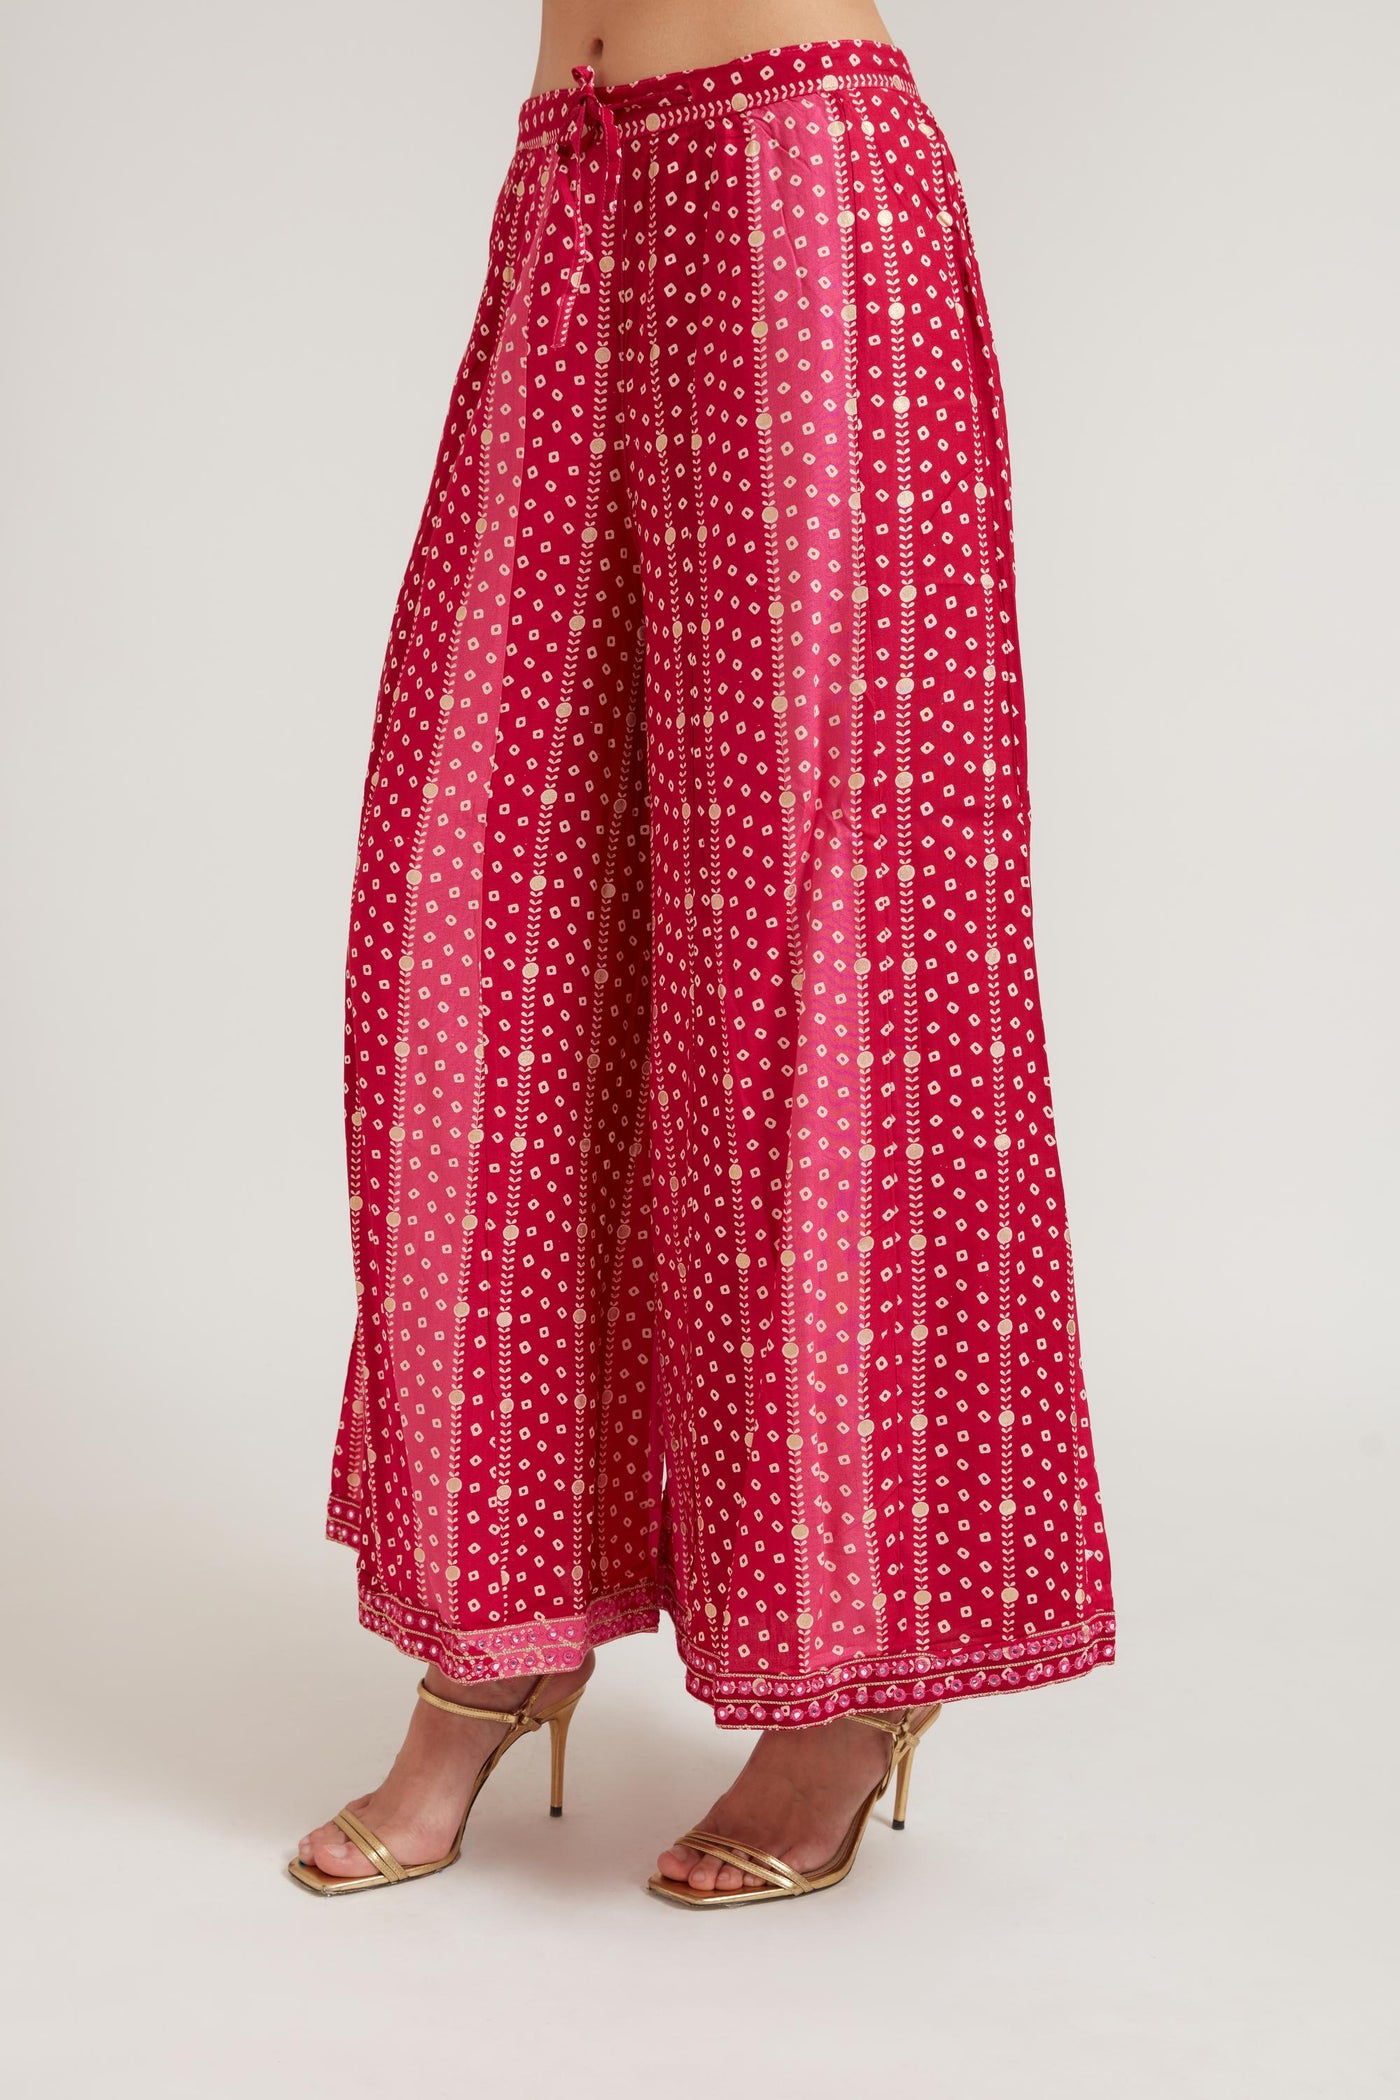 Neeru's Rani Color Cotton Fabric Suit Set